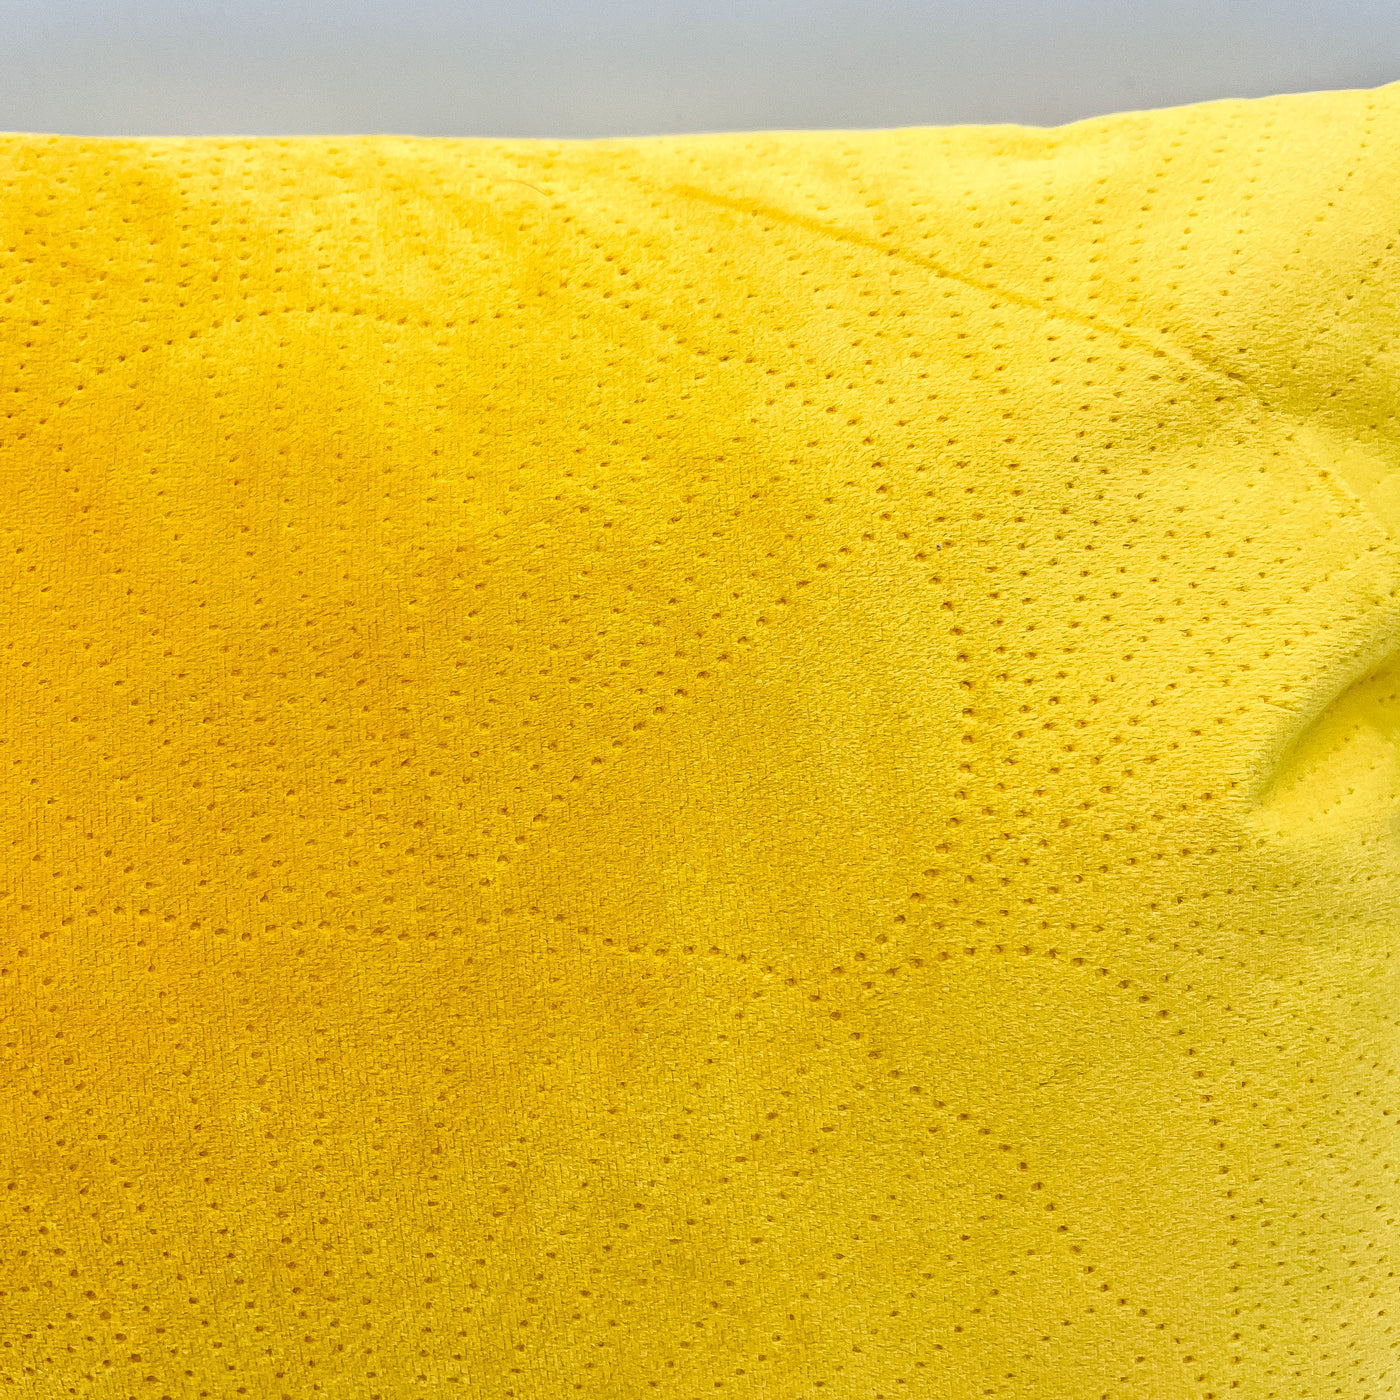 Textil Cojines Fibras sintéticas Amarillo